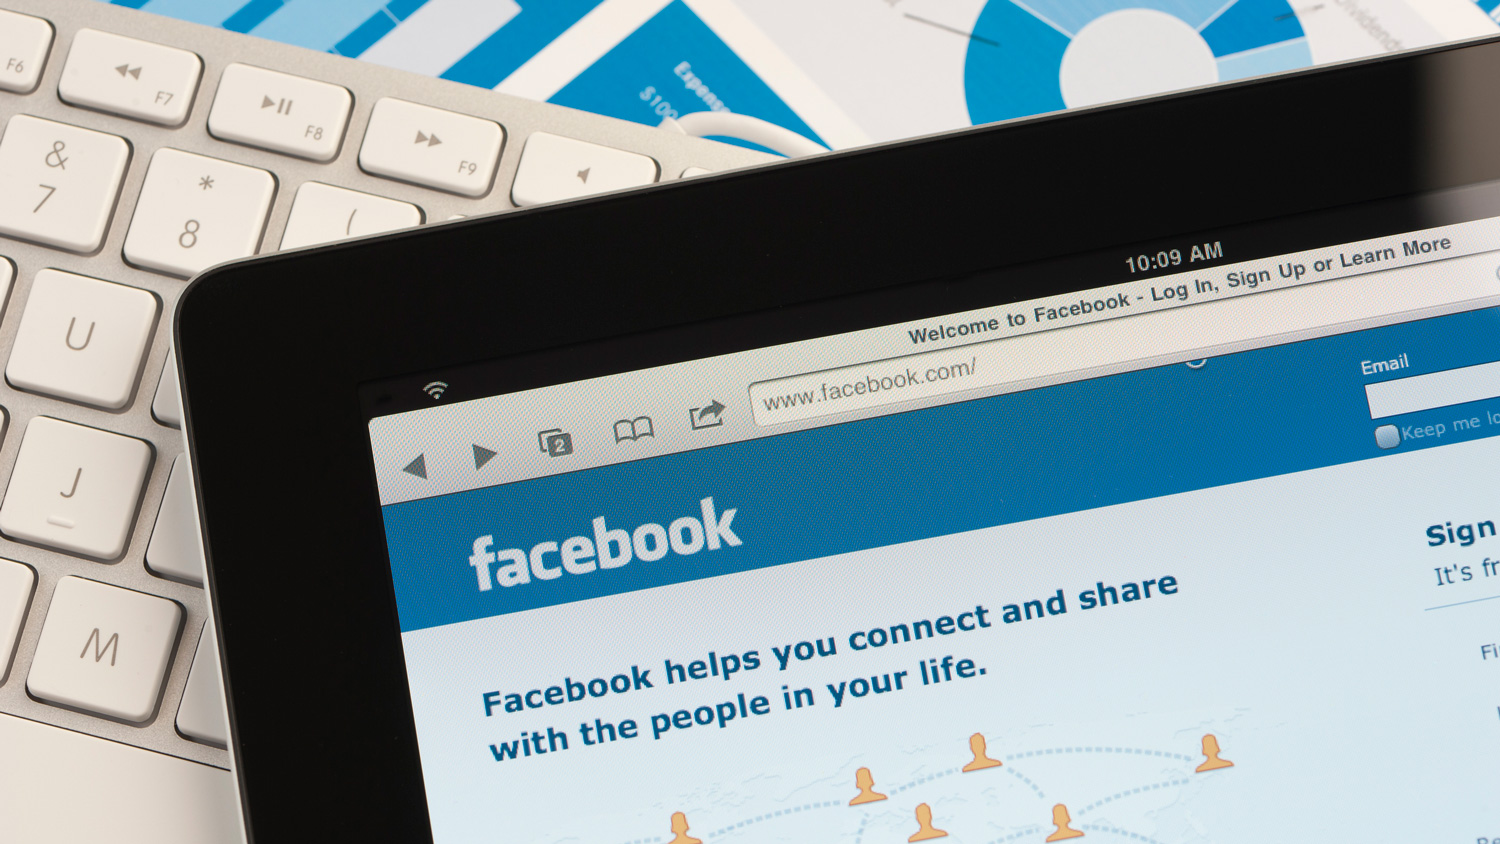 The Facebook social media platform